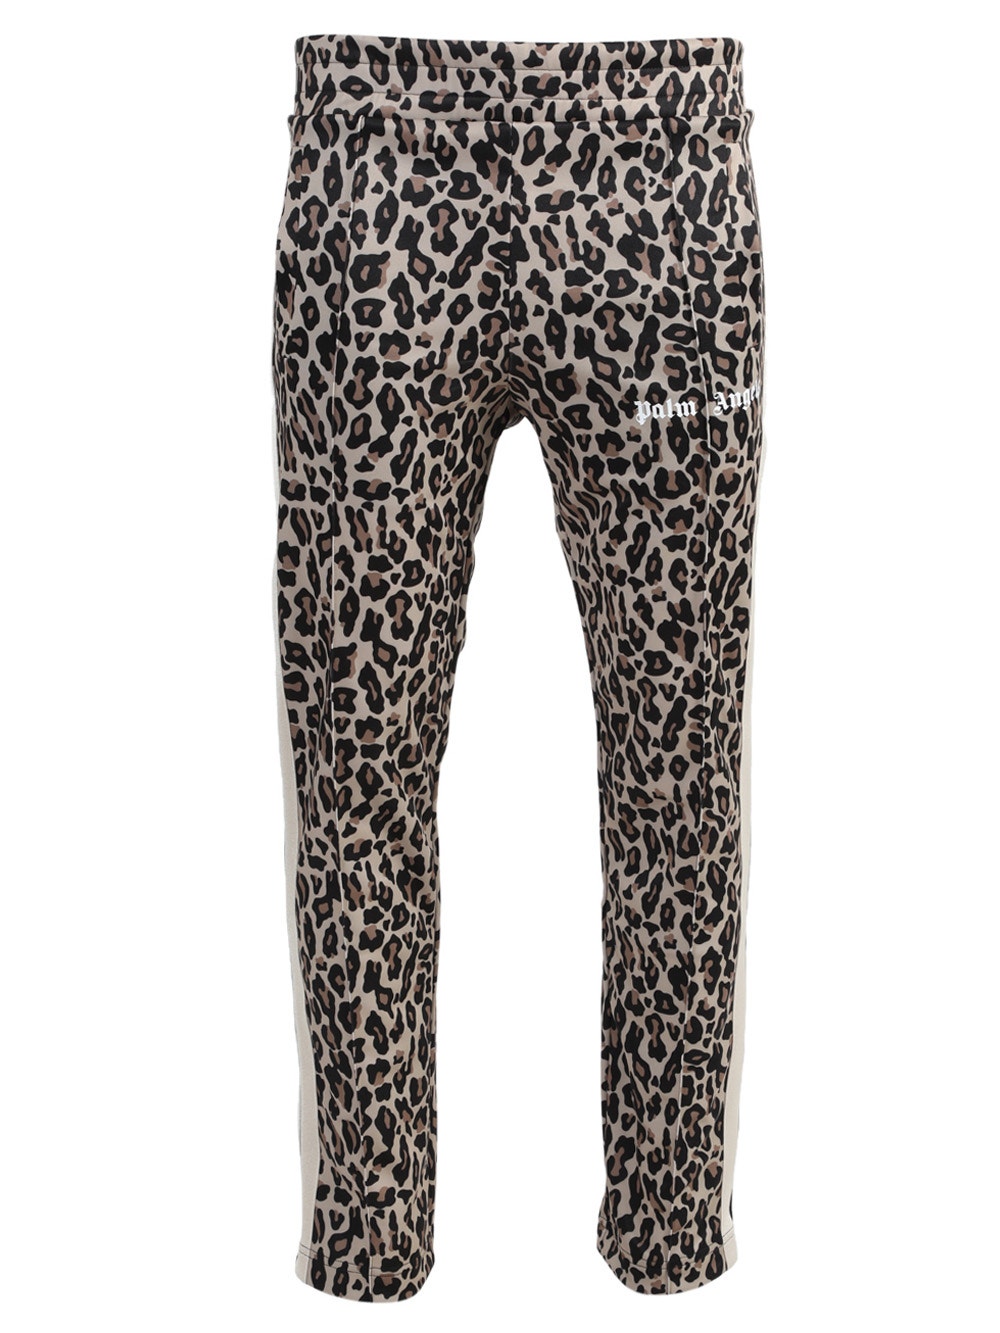 Leopard Track Pants | The Webster